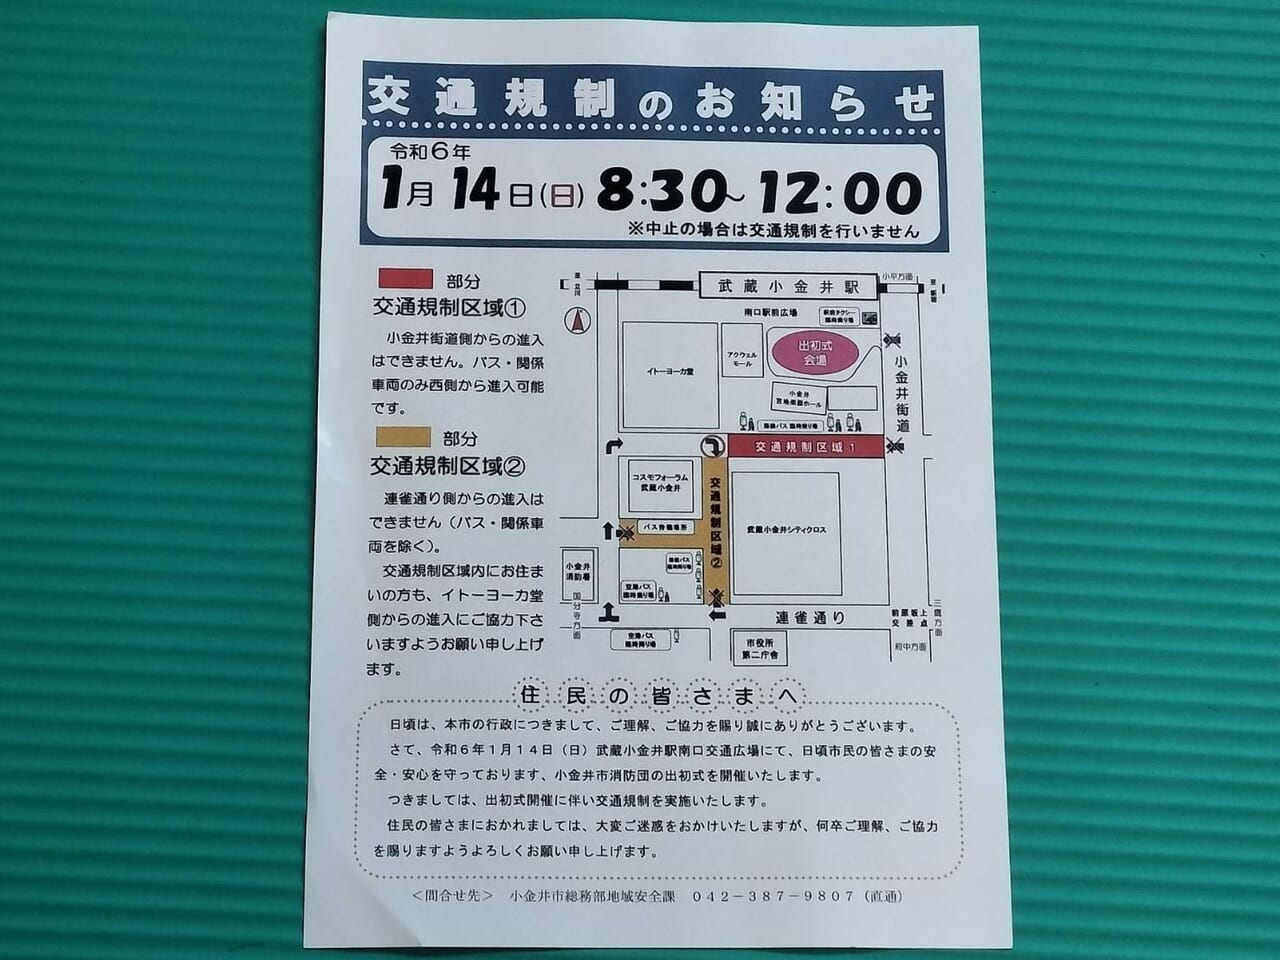 出初式による武蔵小金井駅付近の交通規制